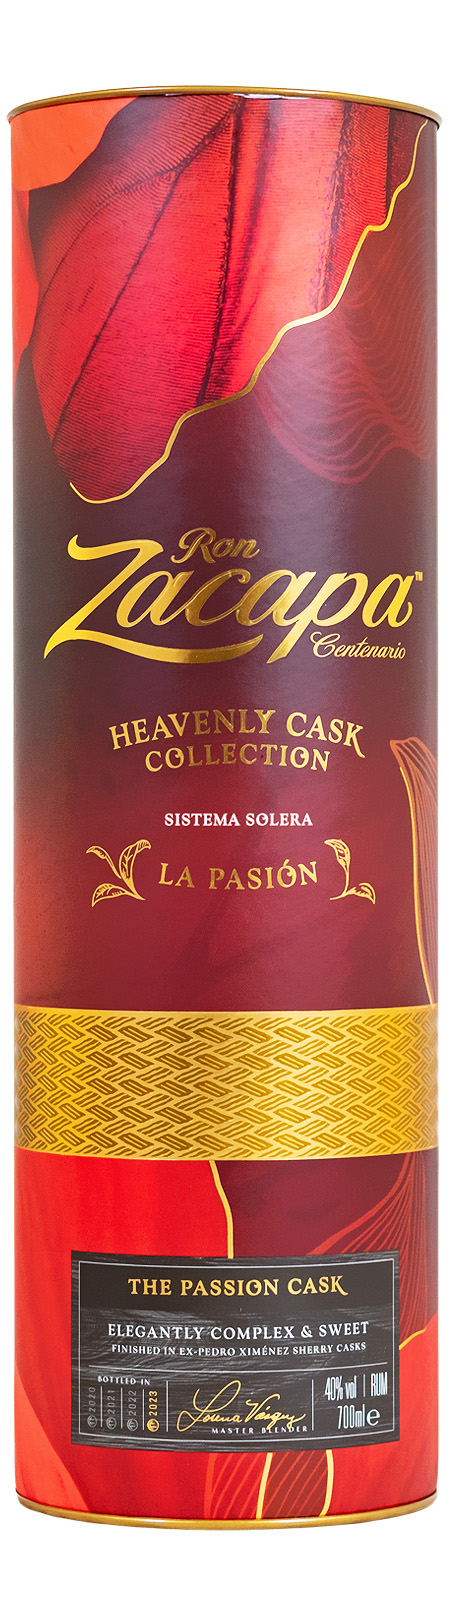 Ron Zacapa La Pasion - 0,7L 40% vol